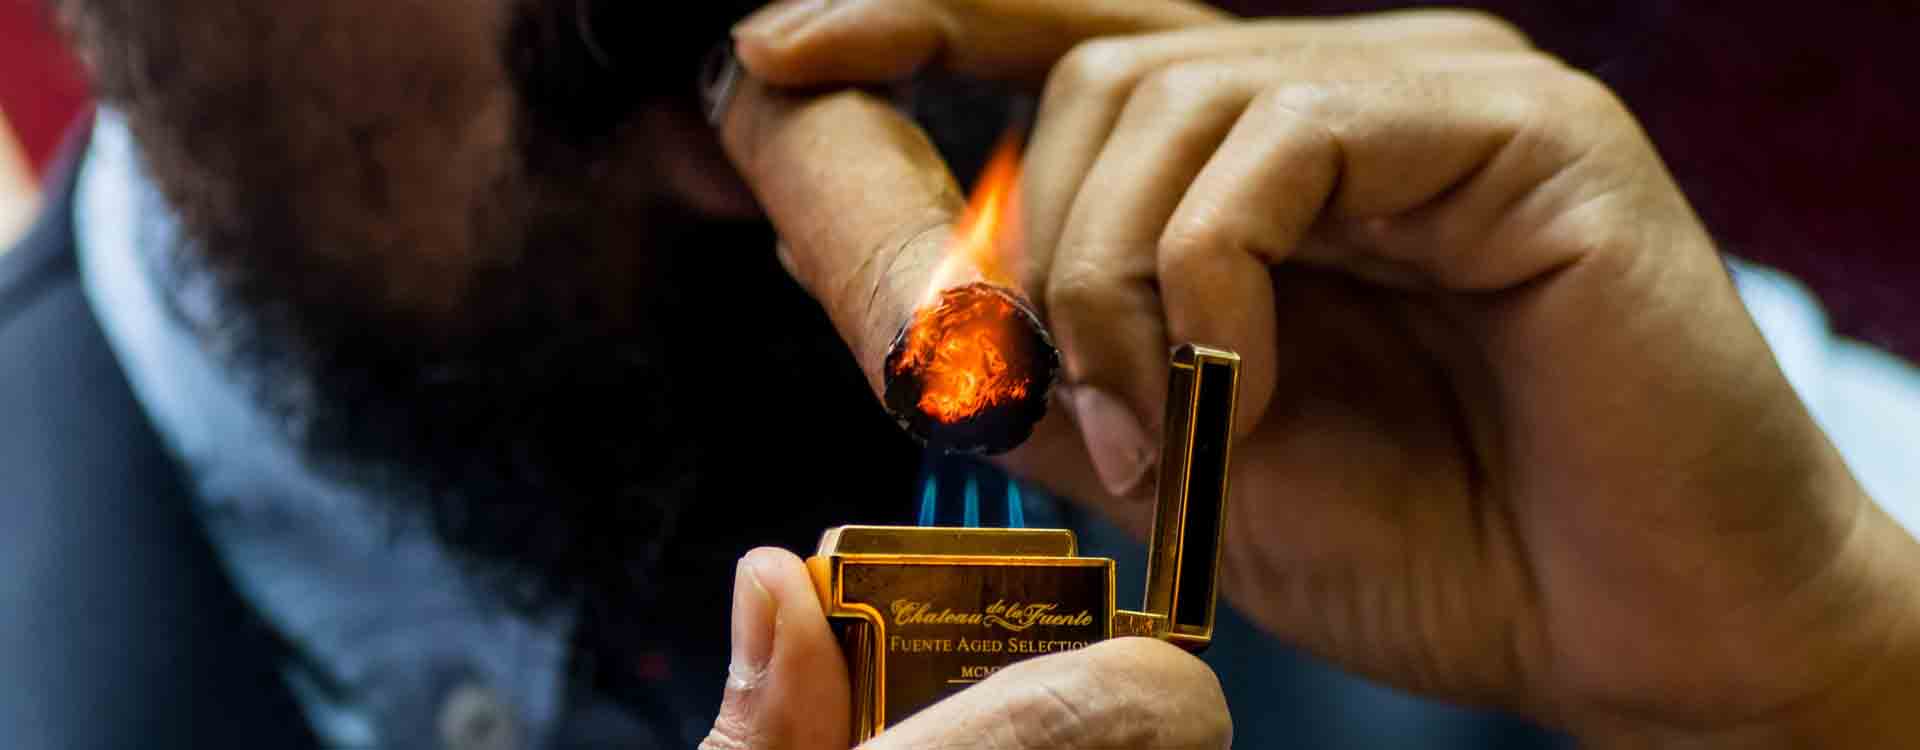 Zapaľovanie cigary tryskovým zapaľovačom